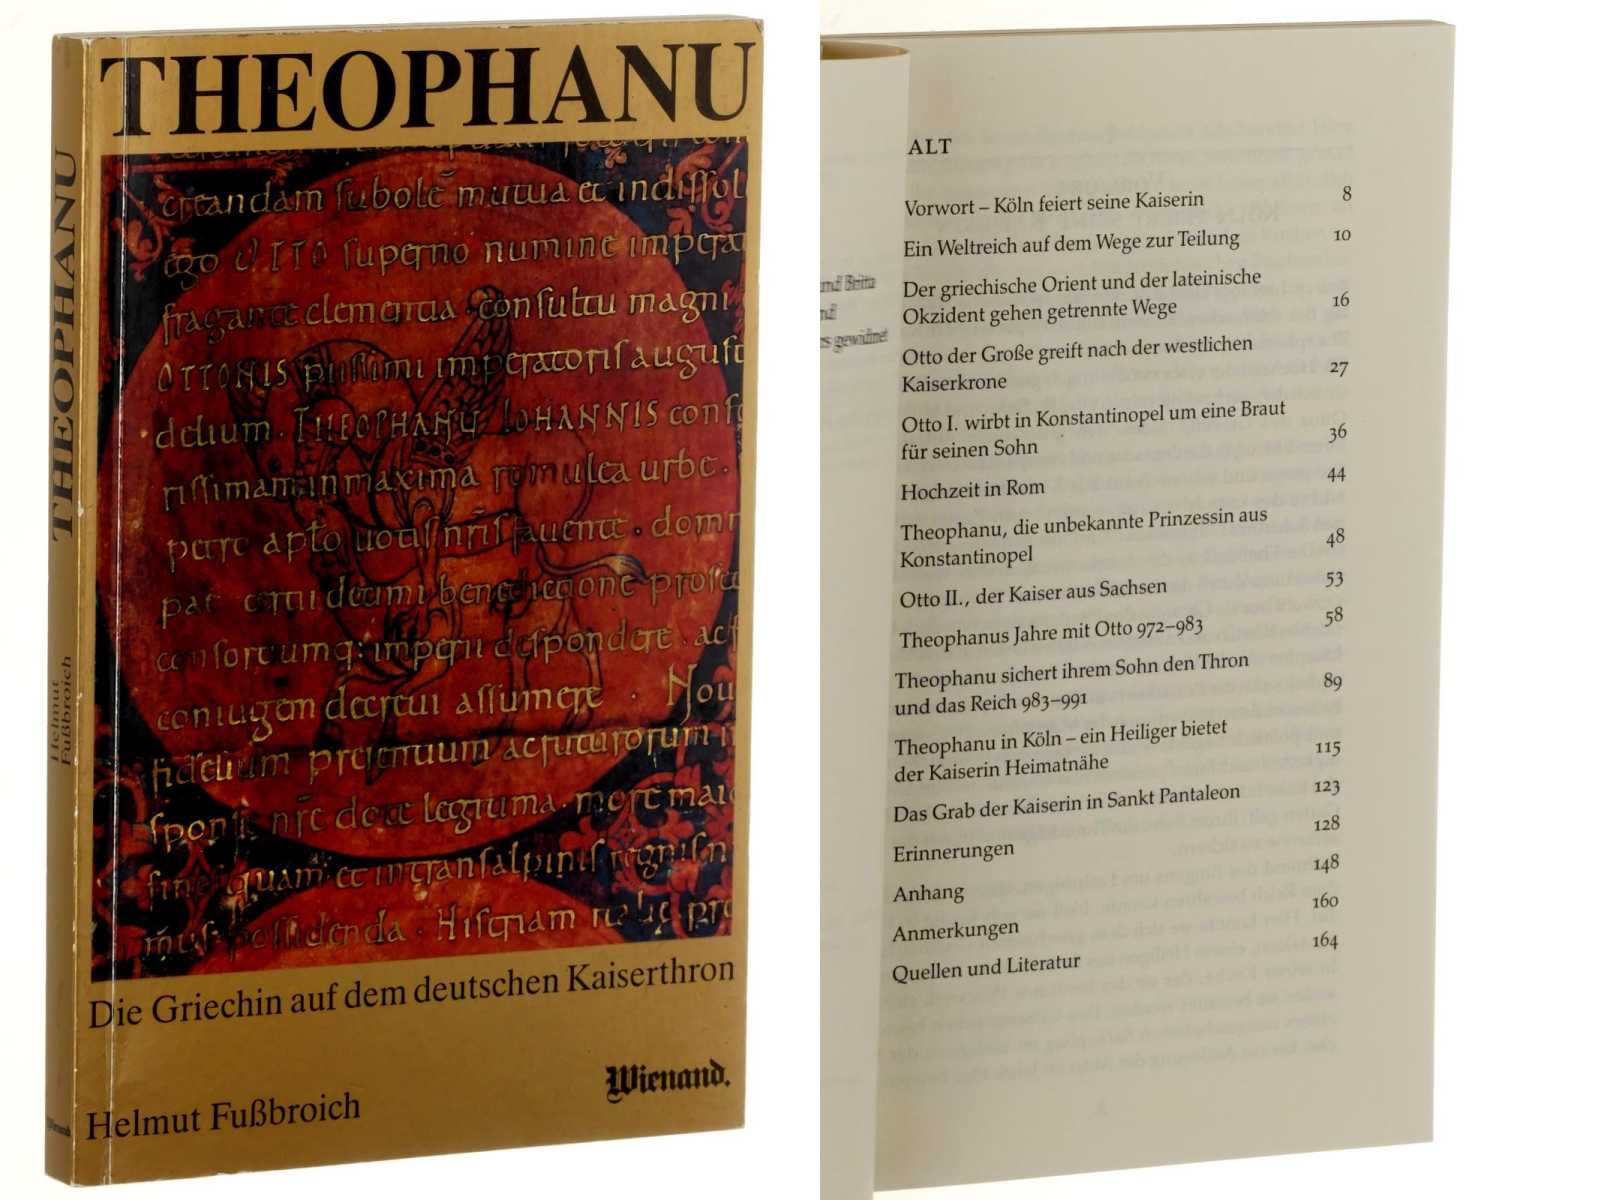 Fußbroich, Helmut:  Theophanu. Die Griechin auf dem deutschen Kaiserthron 972 - 991. 